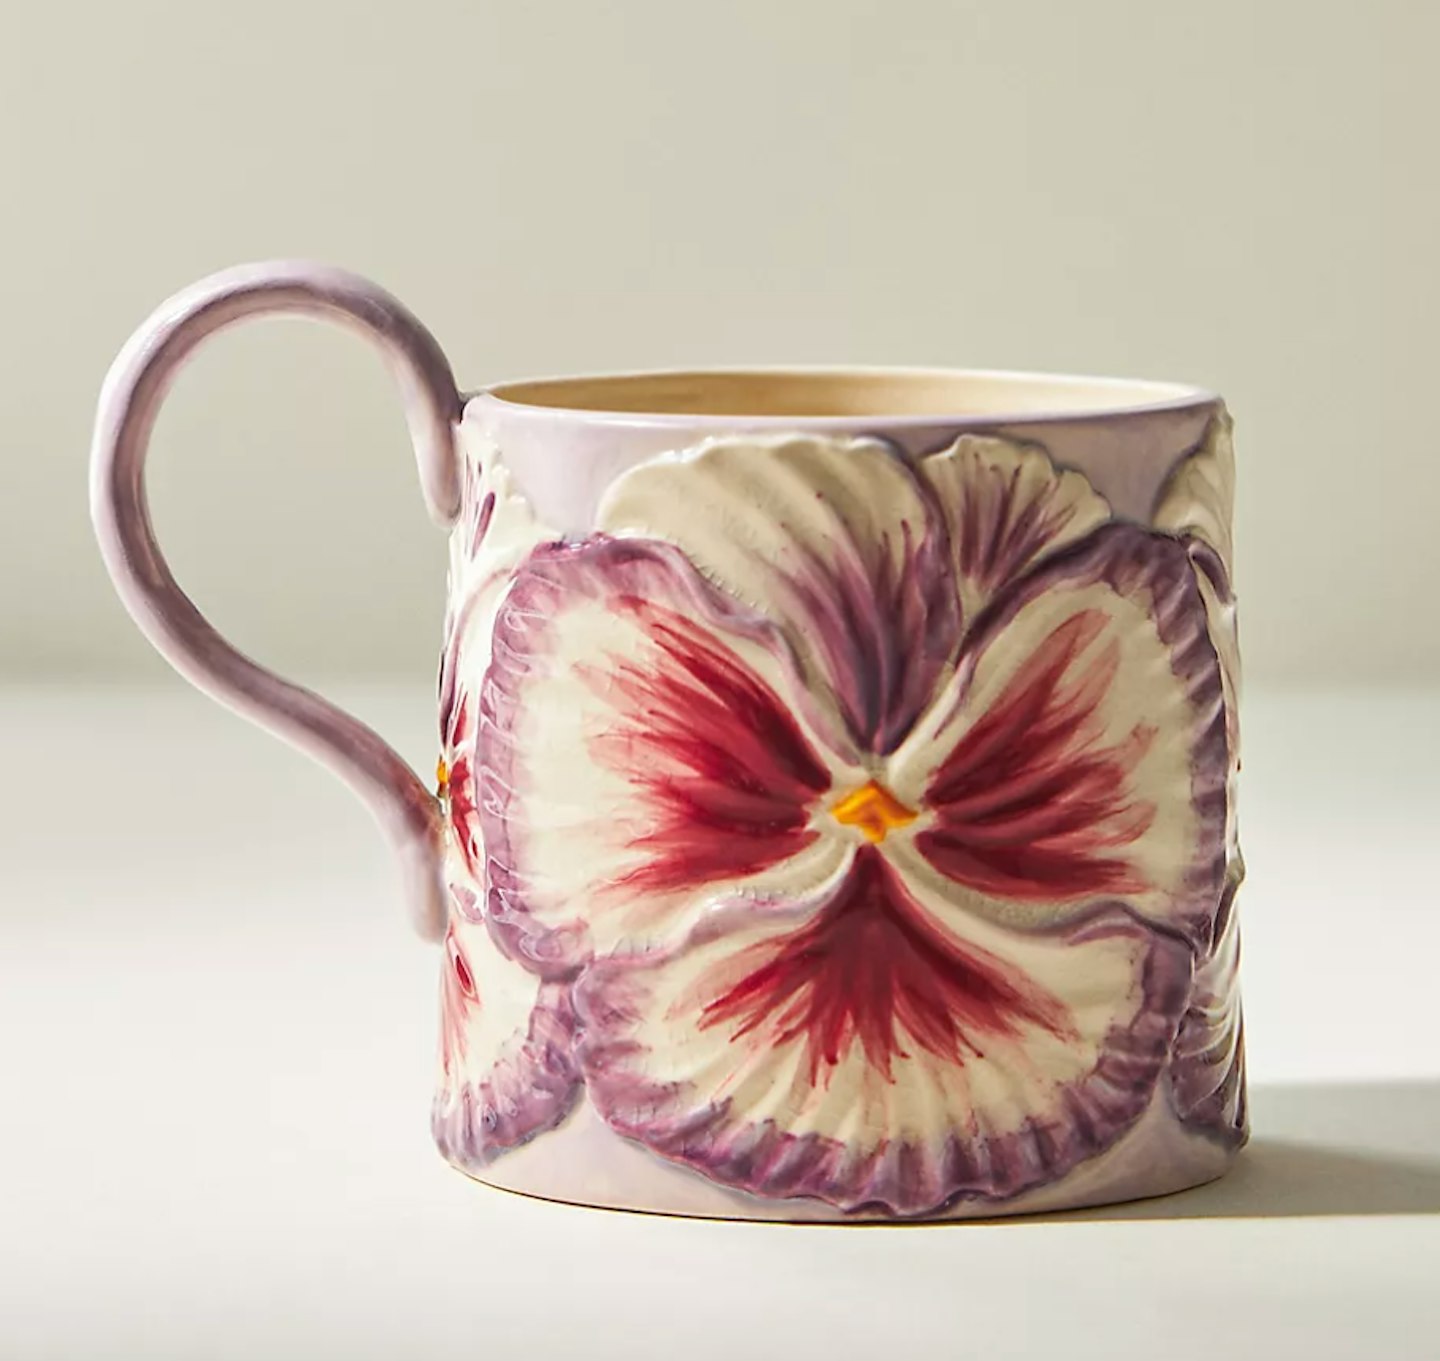  Anthropologie Lilypad Floral Mug